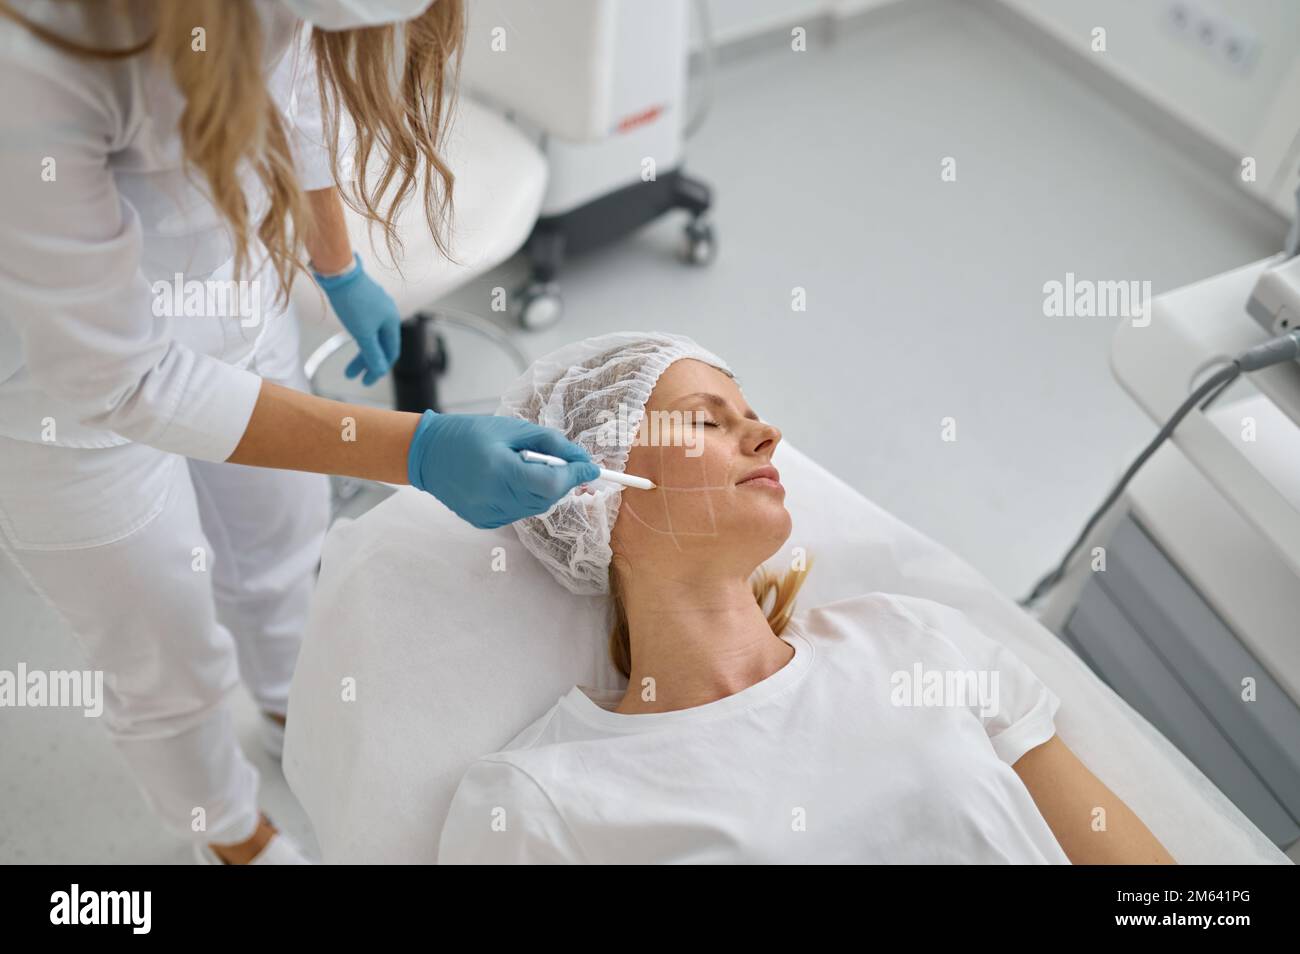 Dessin du cosmétologue avec un crayon blanc sur le visage du patient Banque D'Images